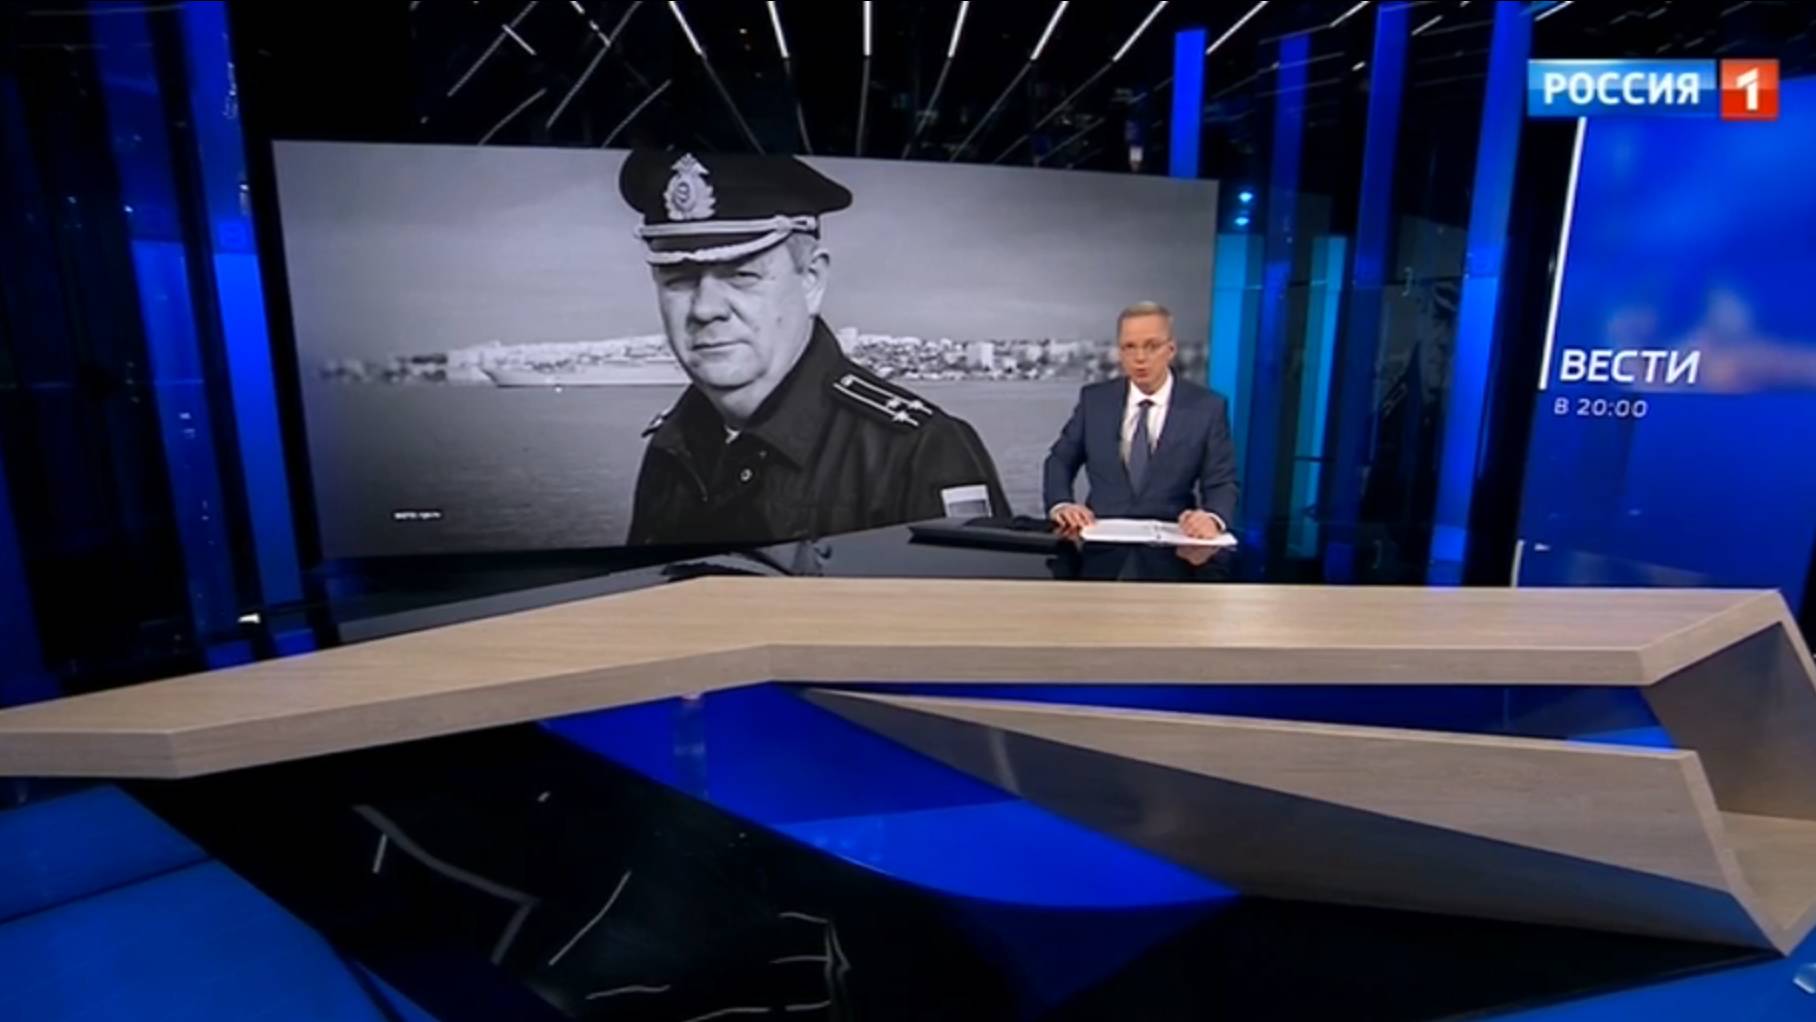 Żałobne zdjęcie oficera na ekranie w studiu rosyjskiej telewizji